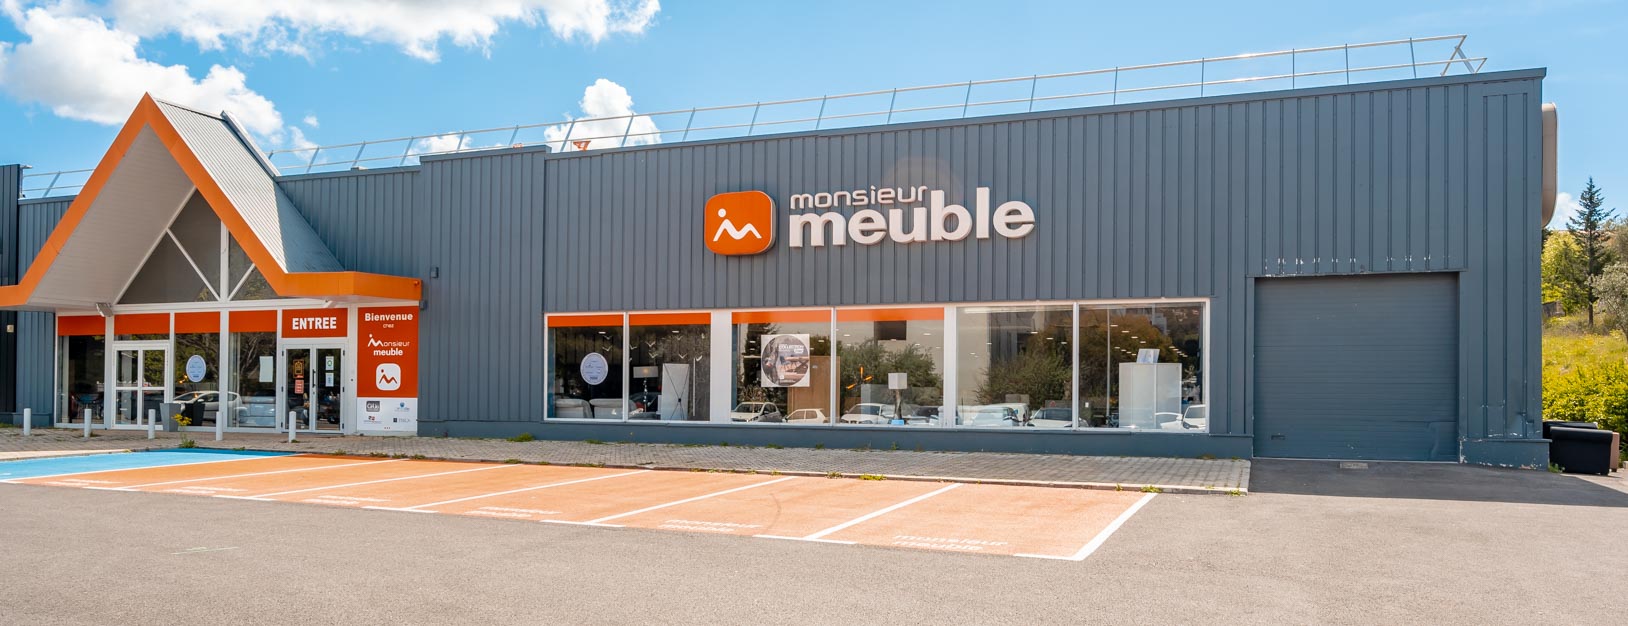 Monsieur Meuble - Meubles